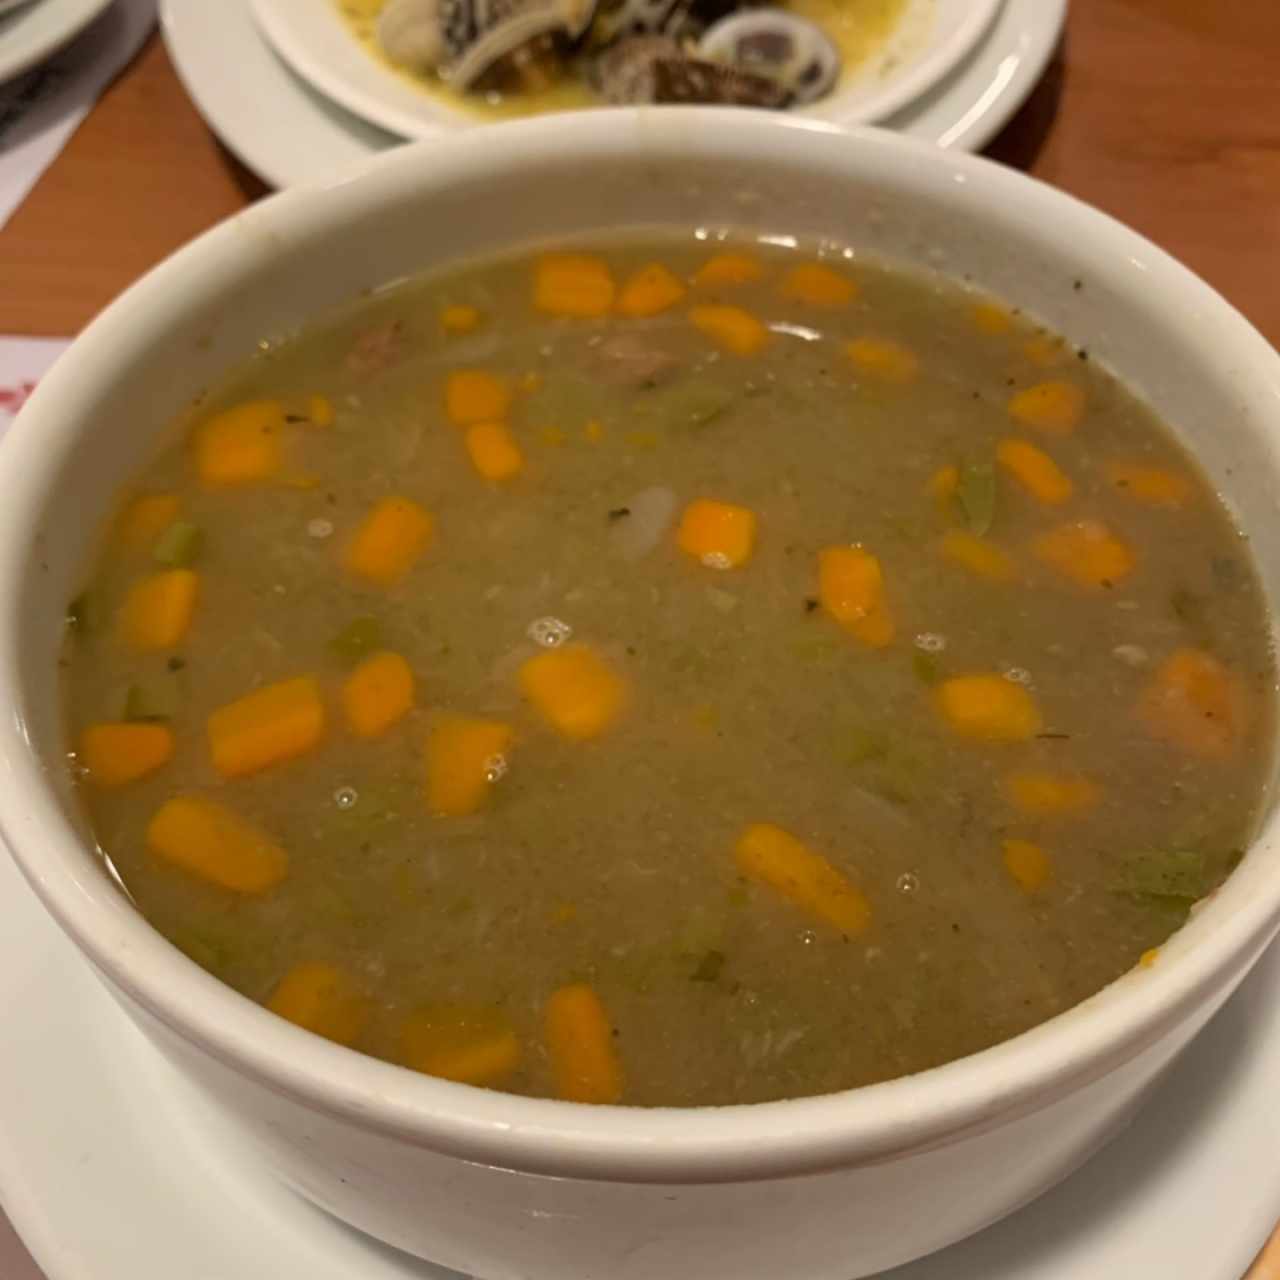 Sopa de Lenteja, estaba deliciosa. 